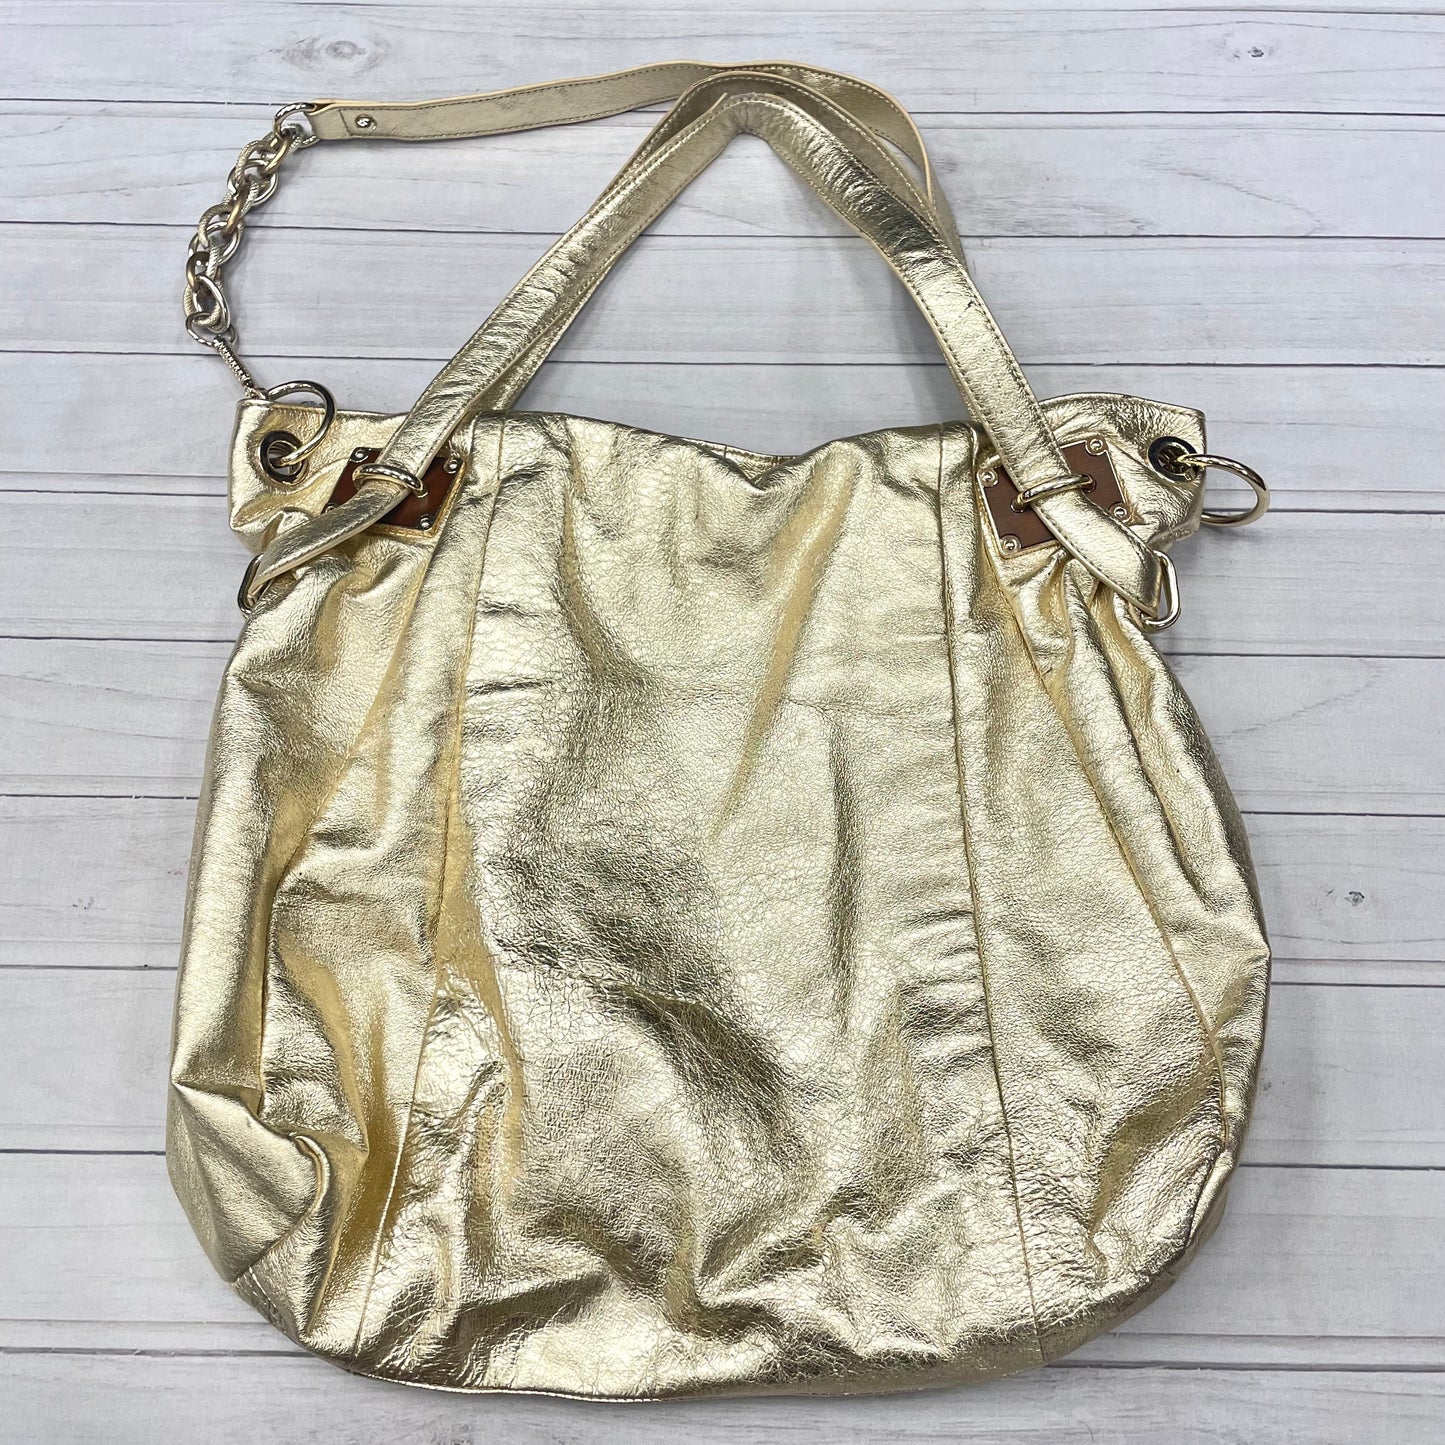 Handbag By Elliot Lucca  Size: Large